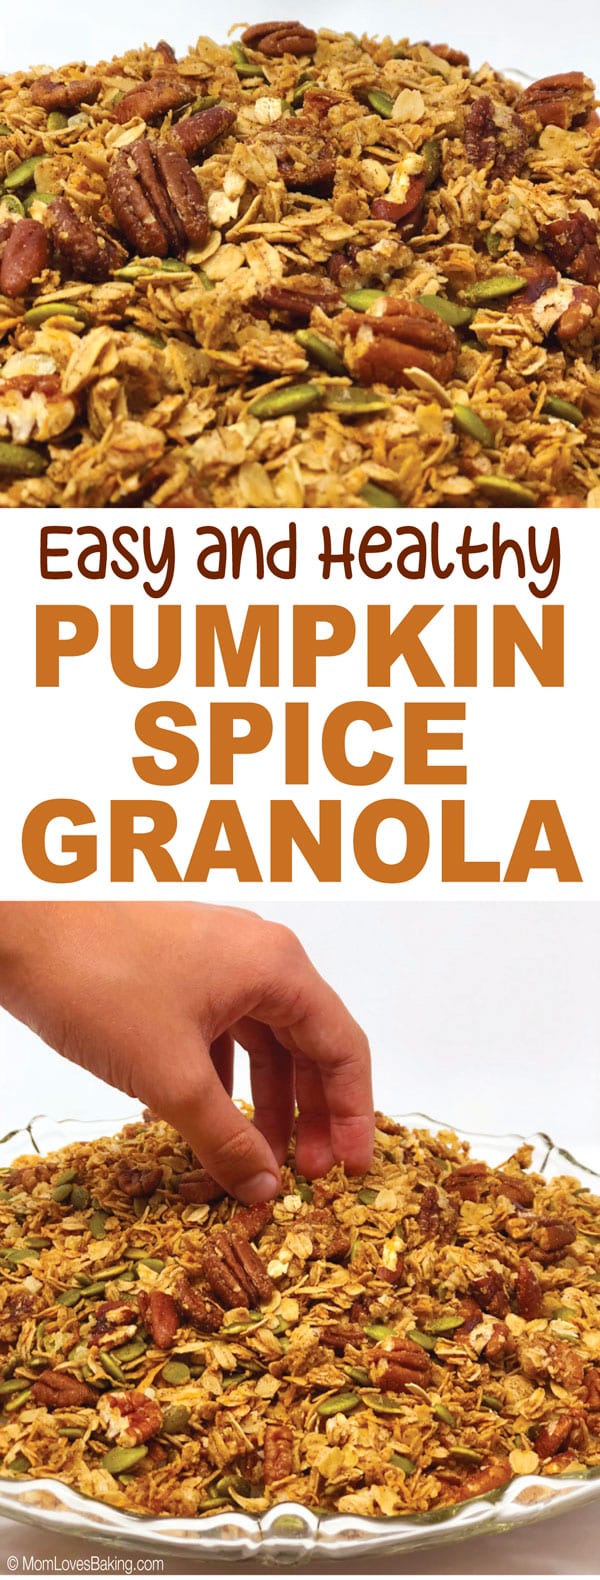 Easy and Healthy Pumpkin Spice Granola